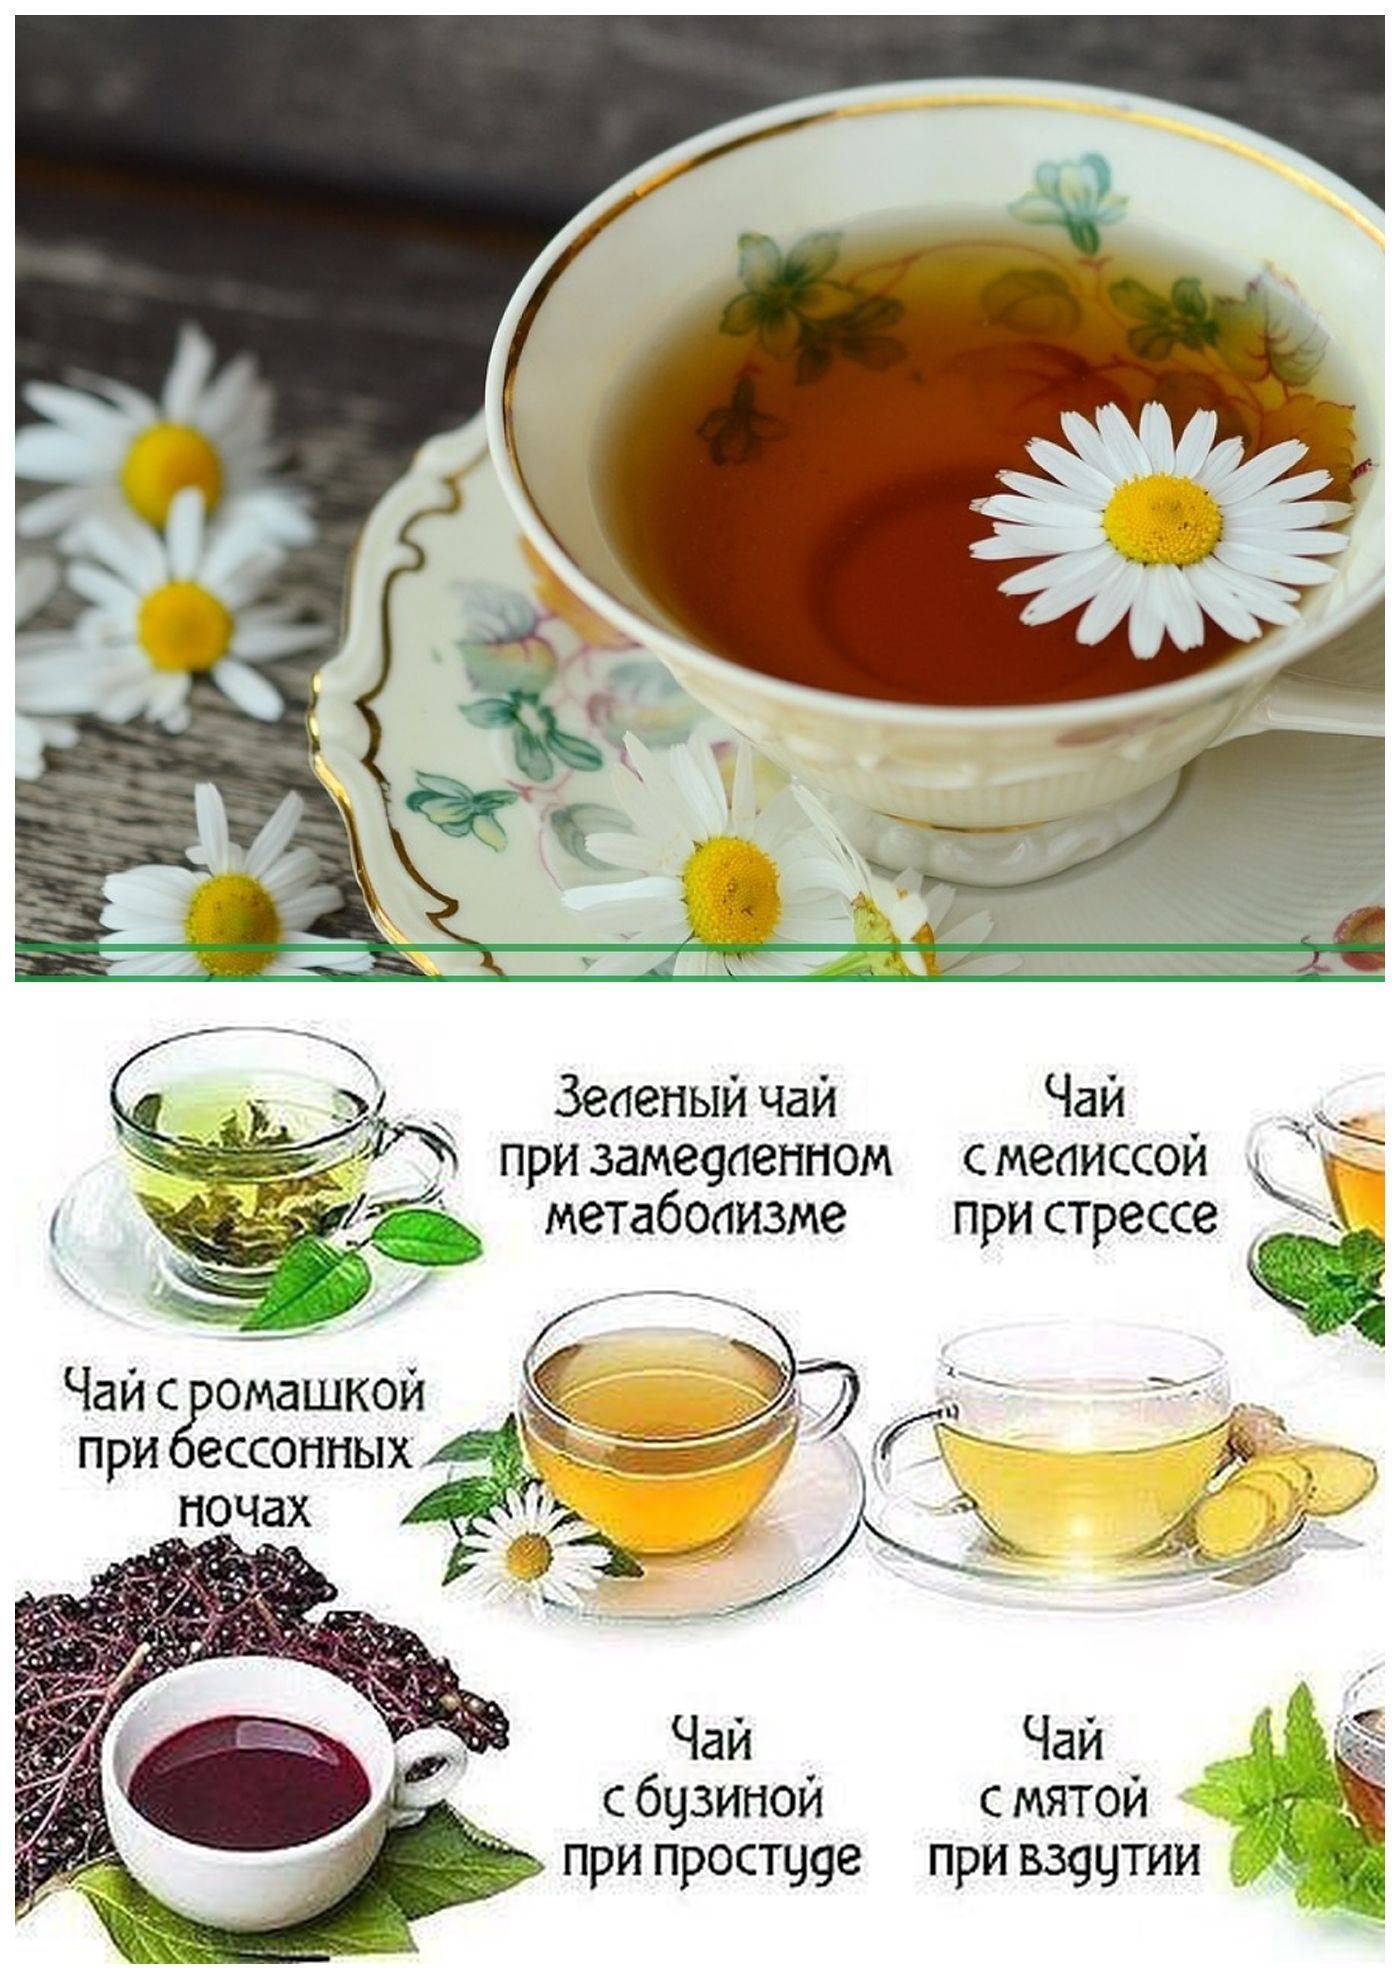 Домашняя мята: стоит ли использовать цветы для приготовления чая